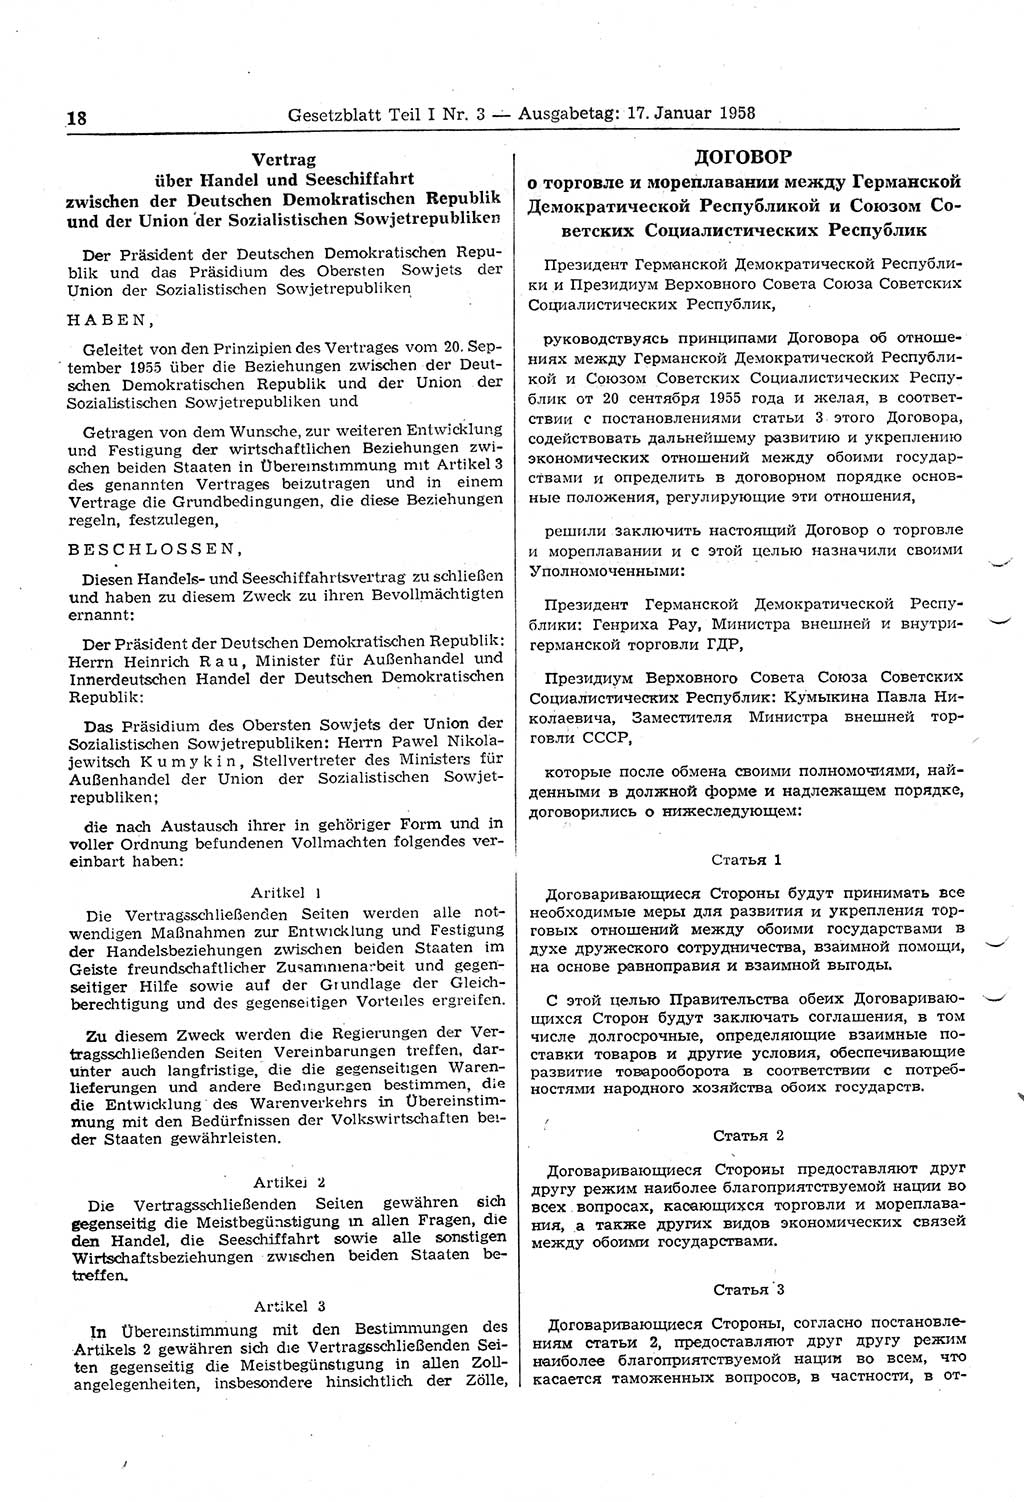 Gesetzblatt (GBl.) der Deutschen Demokratischen Republik (DDR) Teil Ⅰ 1958, Seite 18 (GBl. DDR Ⅰ 1958, S. 18)